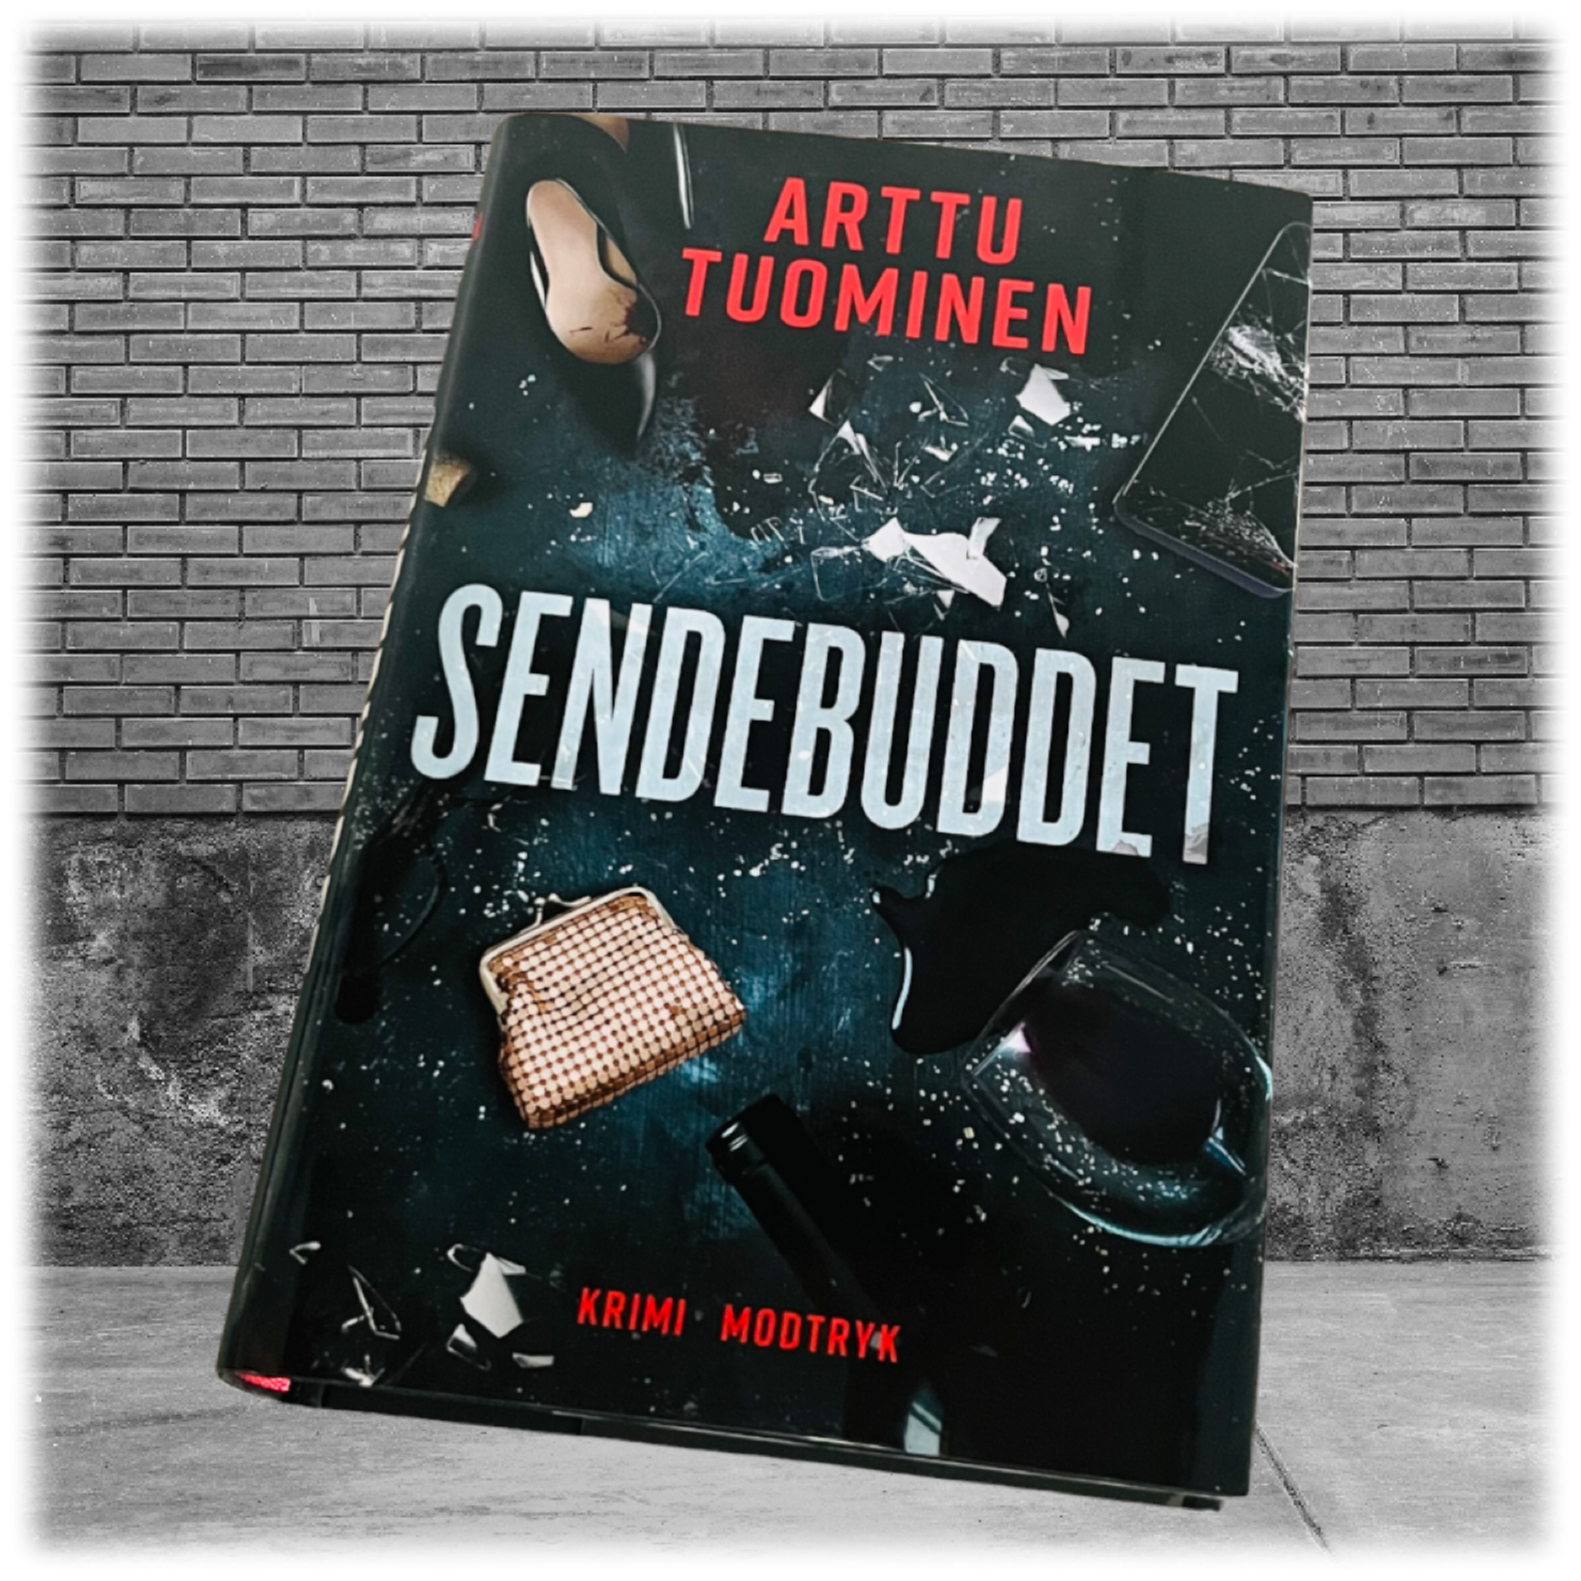 Sendebuddet af Arttu Tuominen